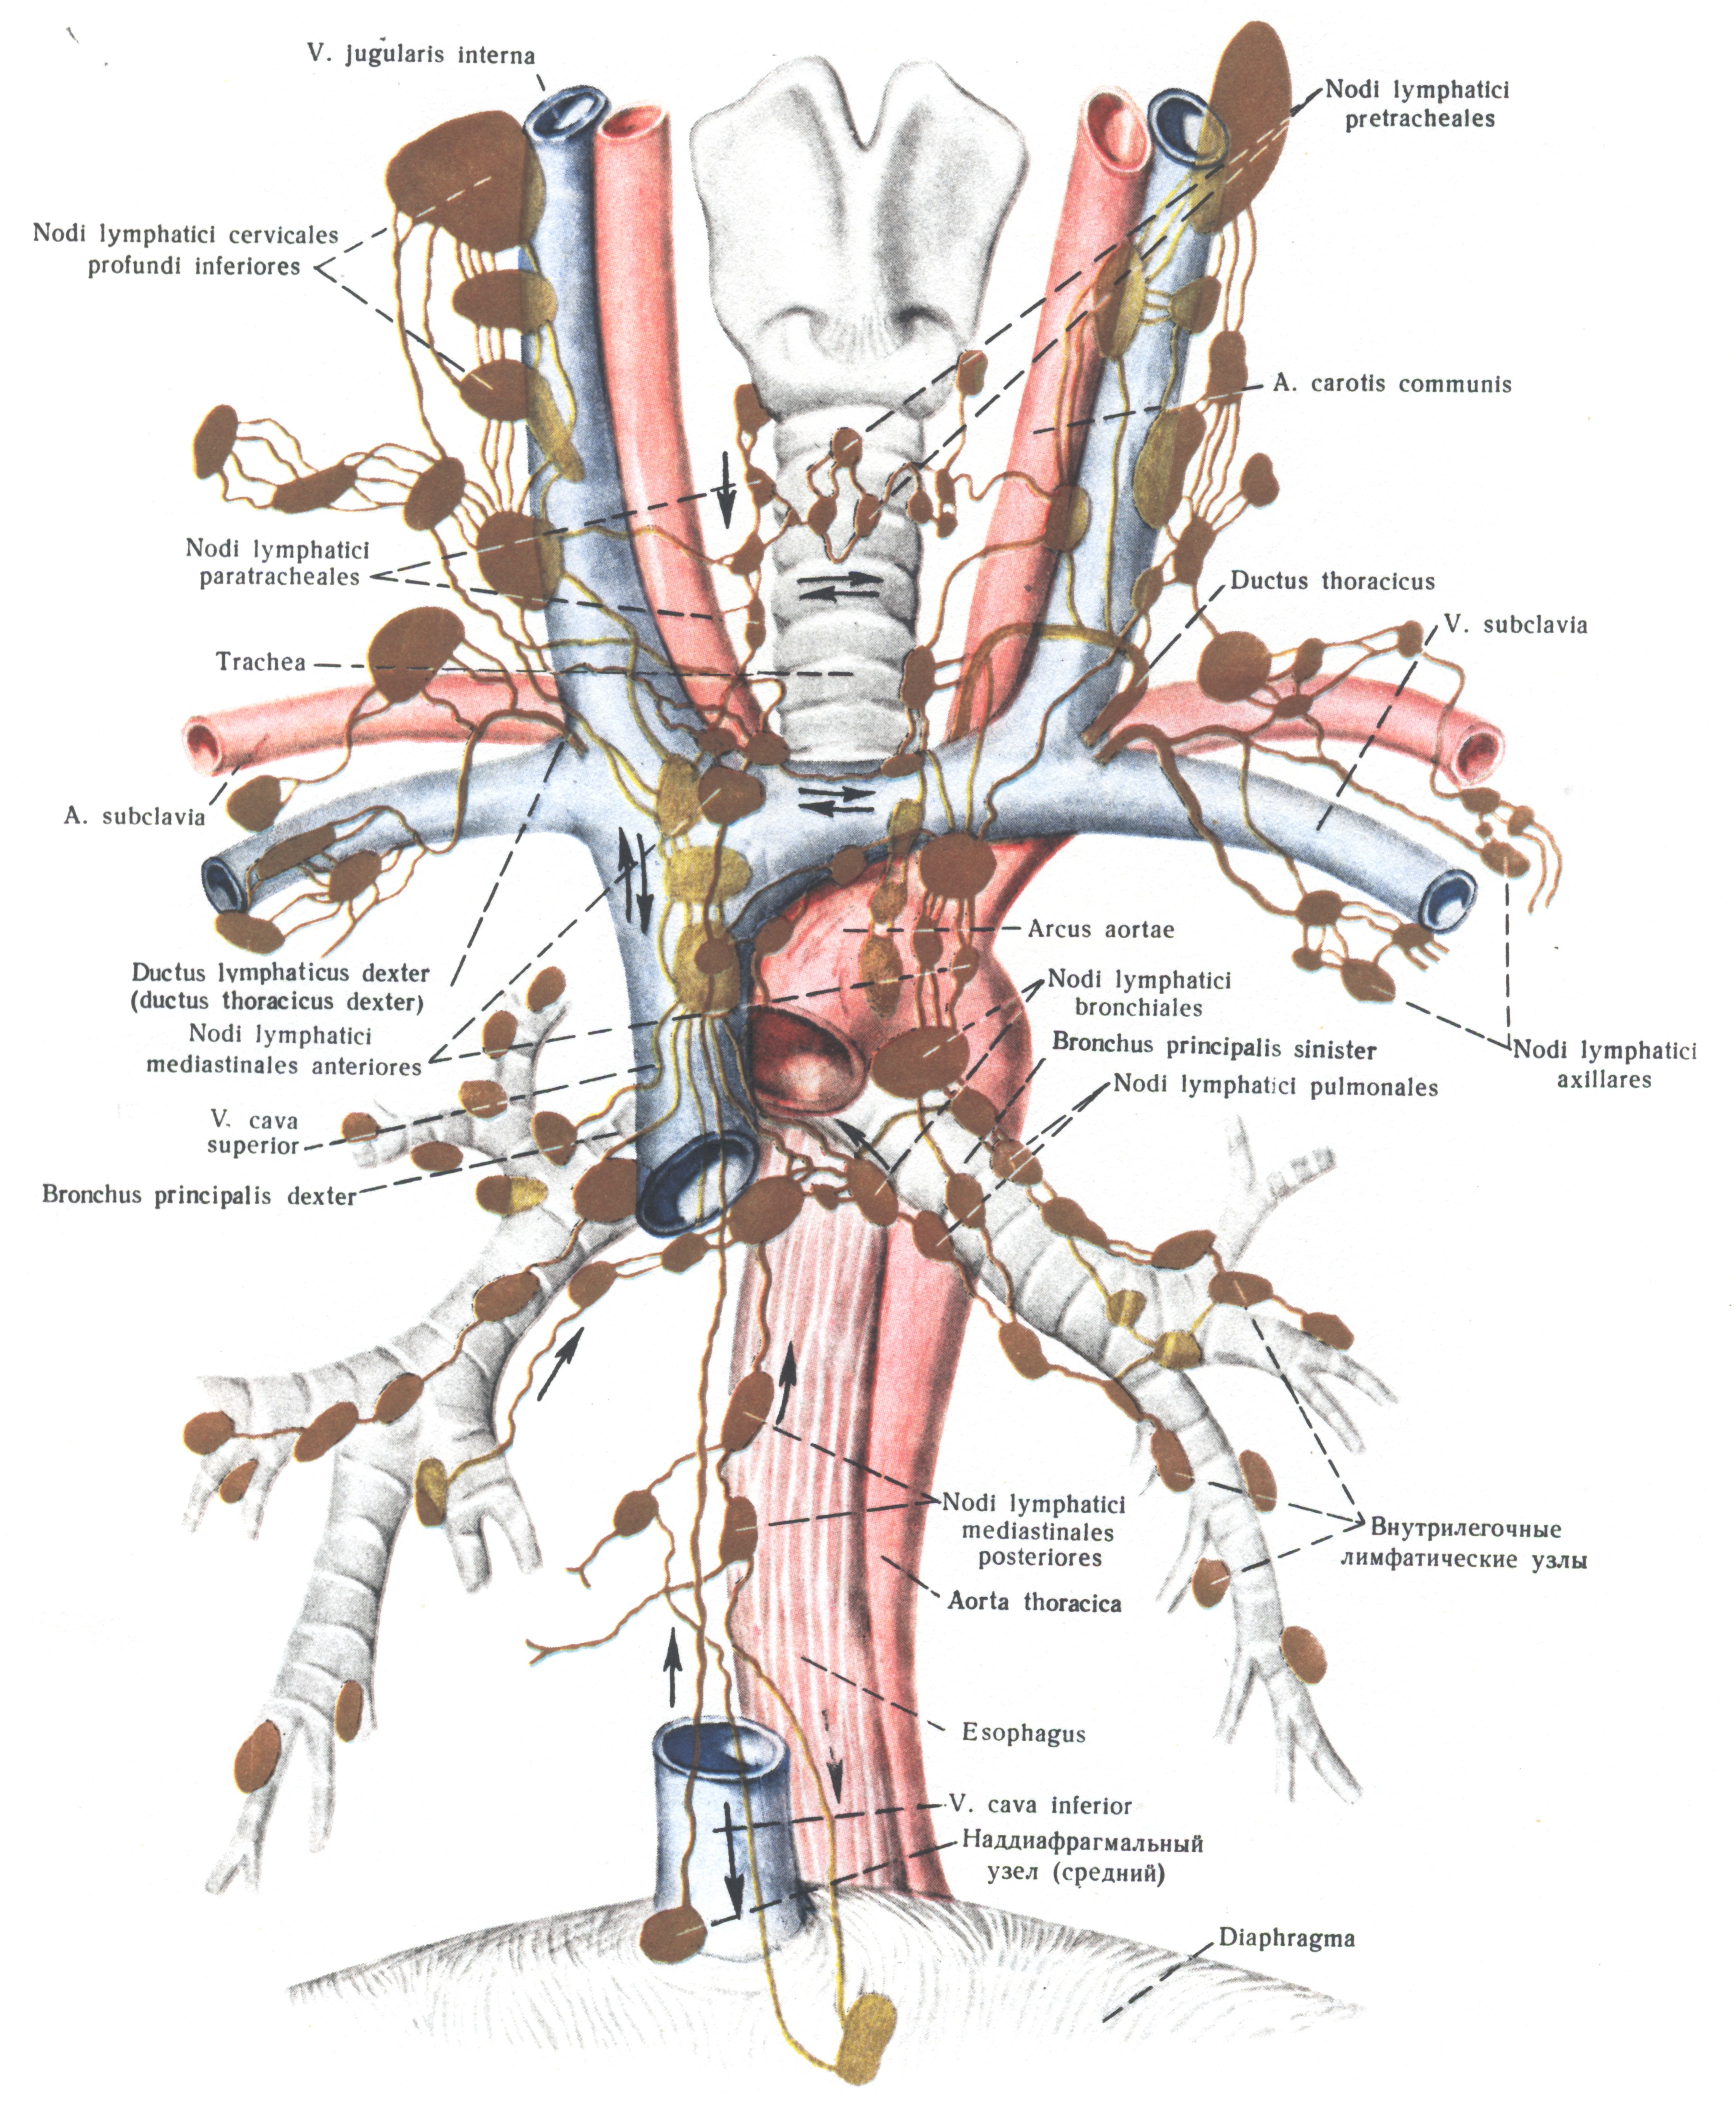 Лимфоузлы и удаление матки. Регионарные лимфатические узлы щитовидной железы. Схема лимфоузлов щитовидной железы. Регионарные лимфатические узлы анатомия. Лимфатическая система щитовидной железы анатомия.